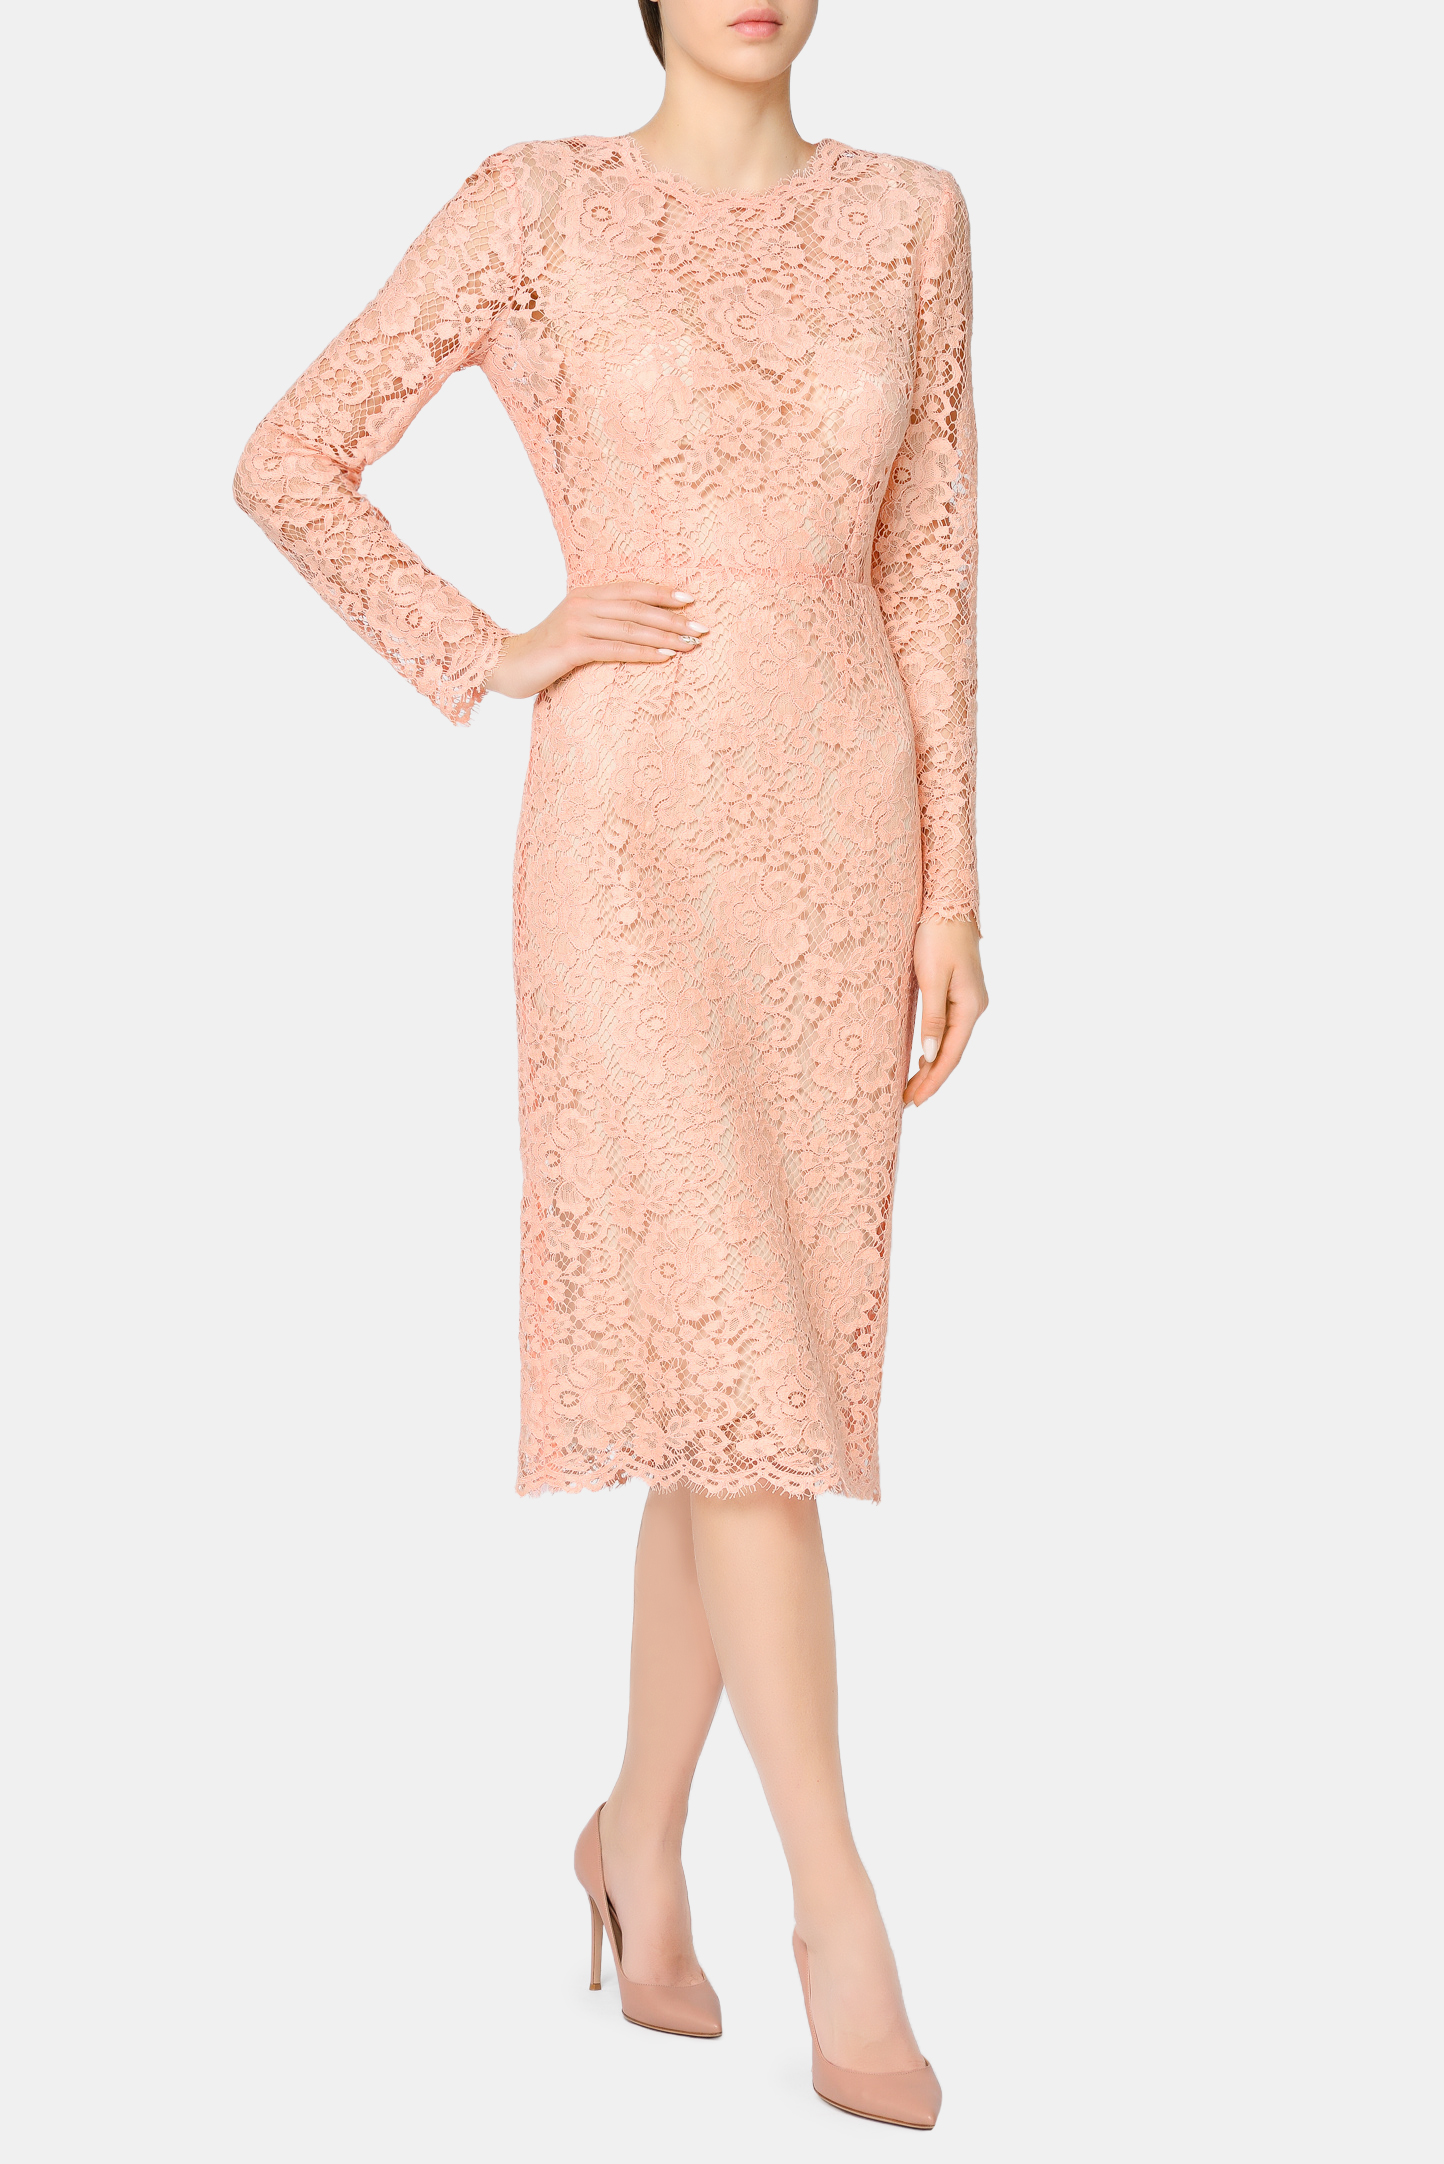 Платье DOLCE & GABBANA F6M0DT HLM0M, цвет: Персиковый, Женский